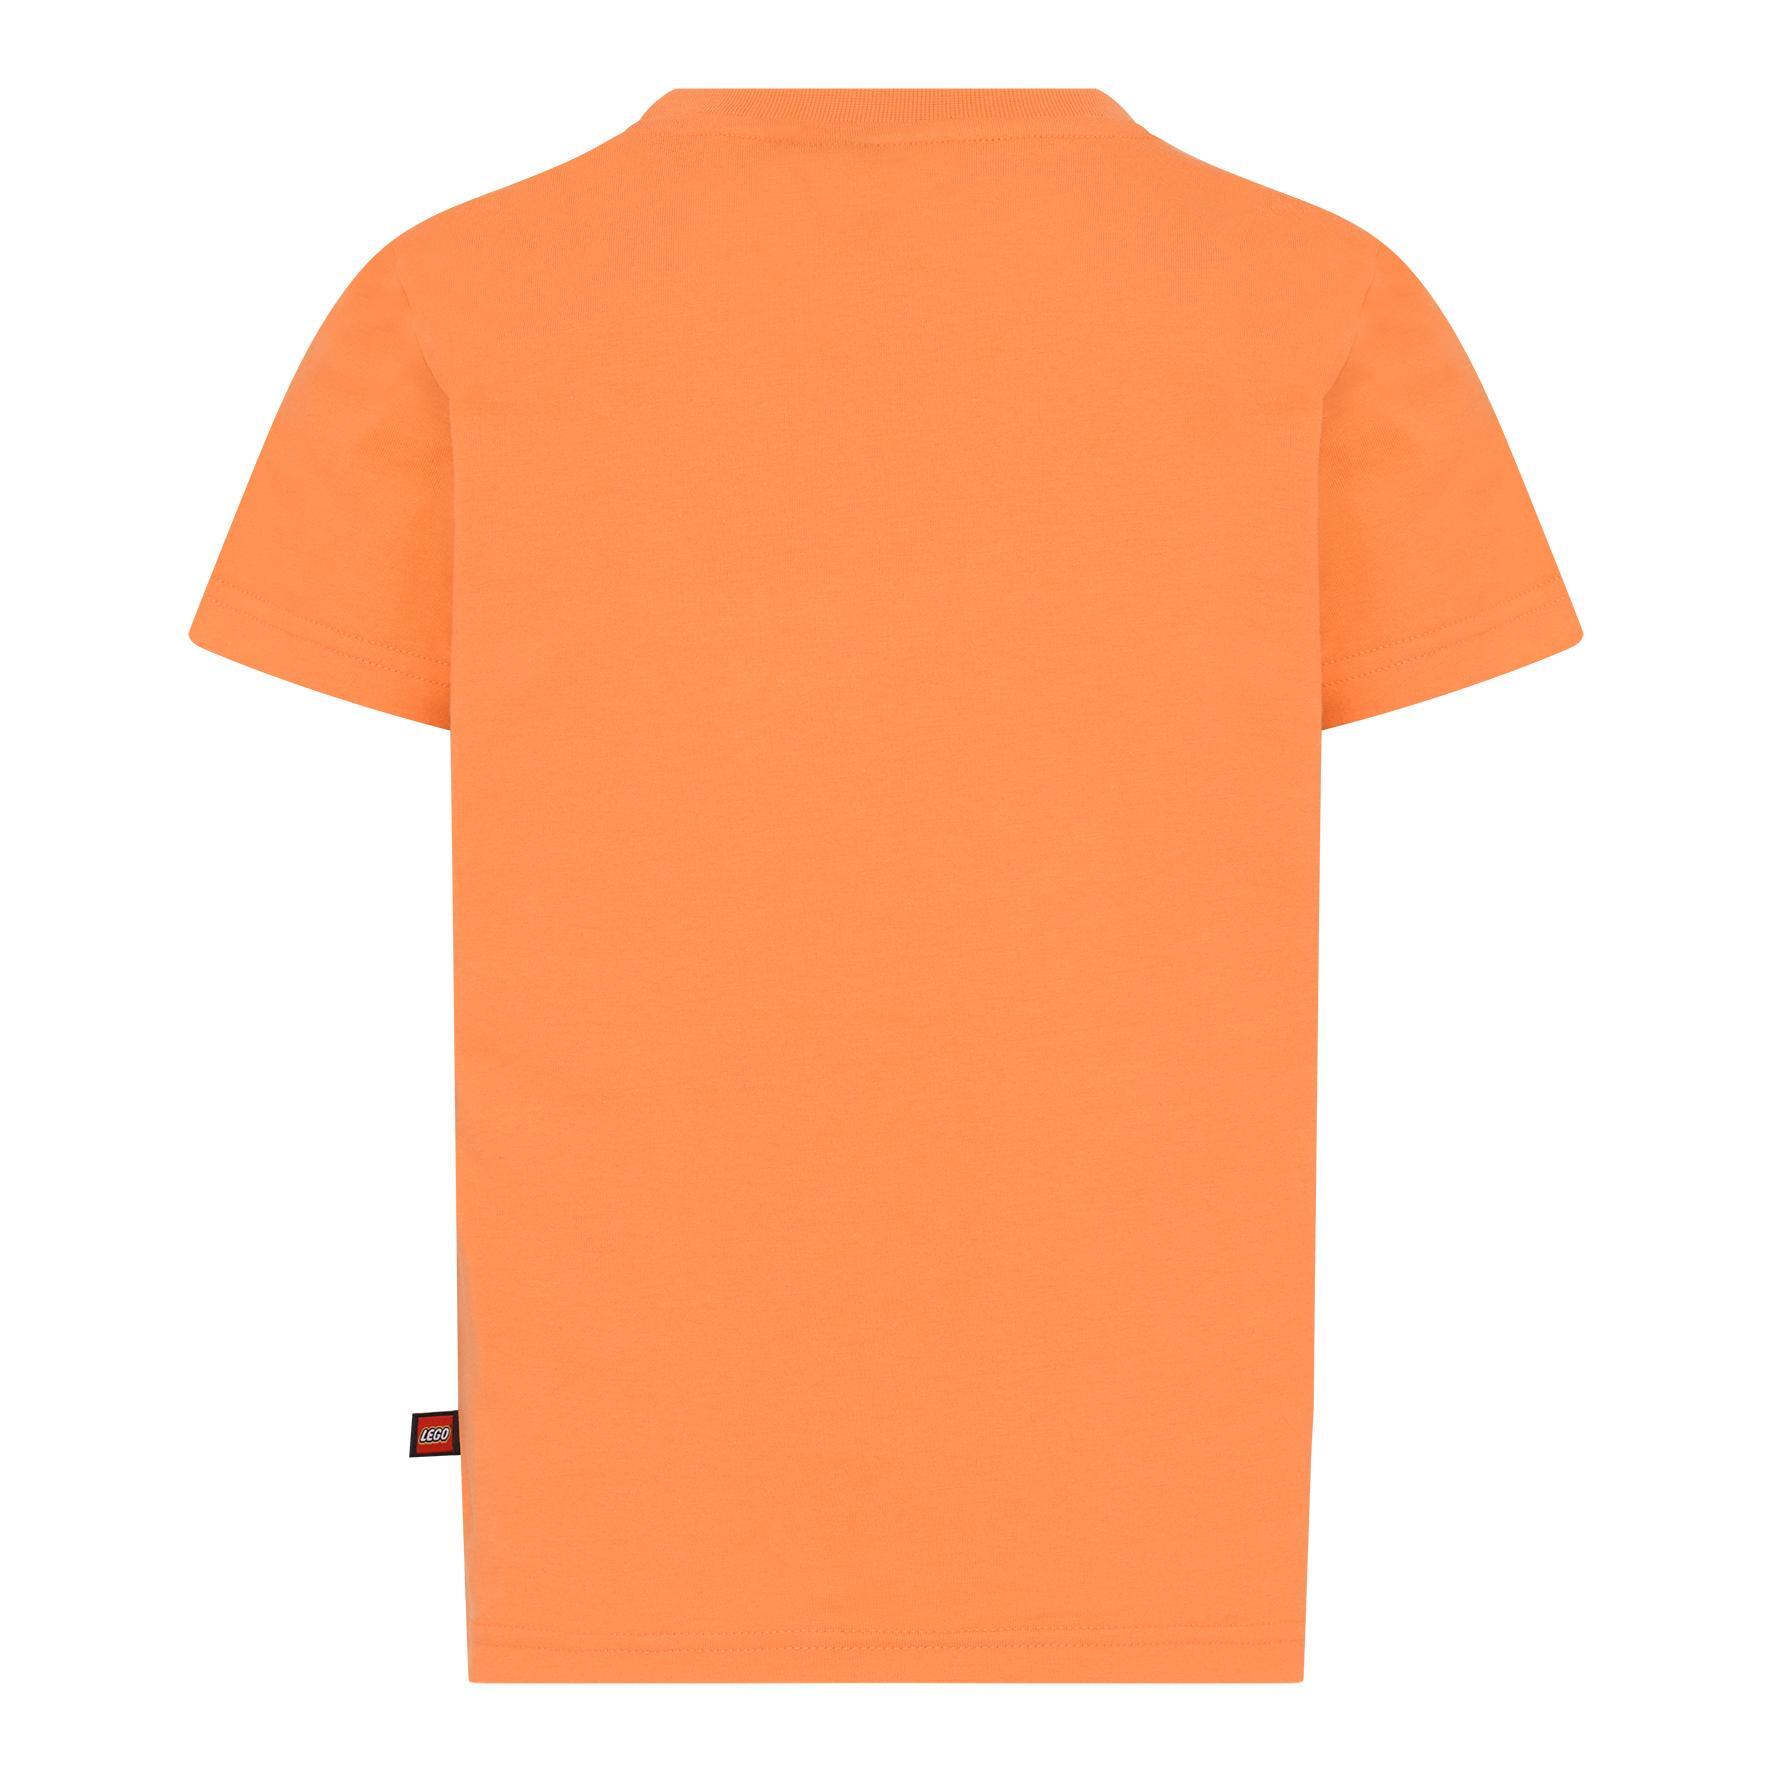 Legowear T-shirt Lwtaylor 330 | NordBaby™